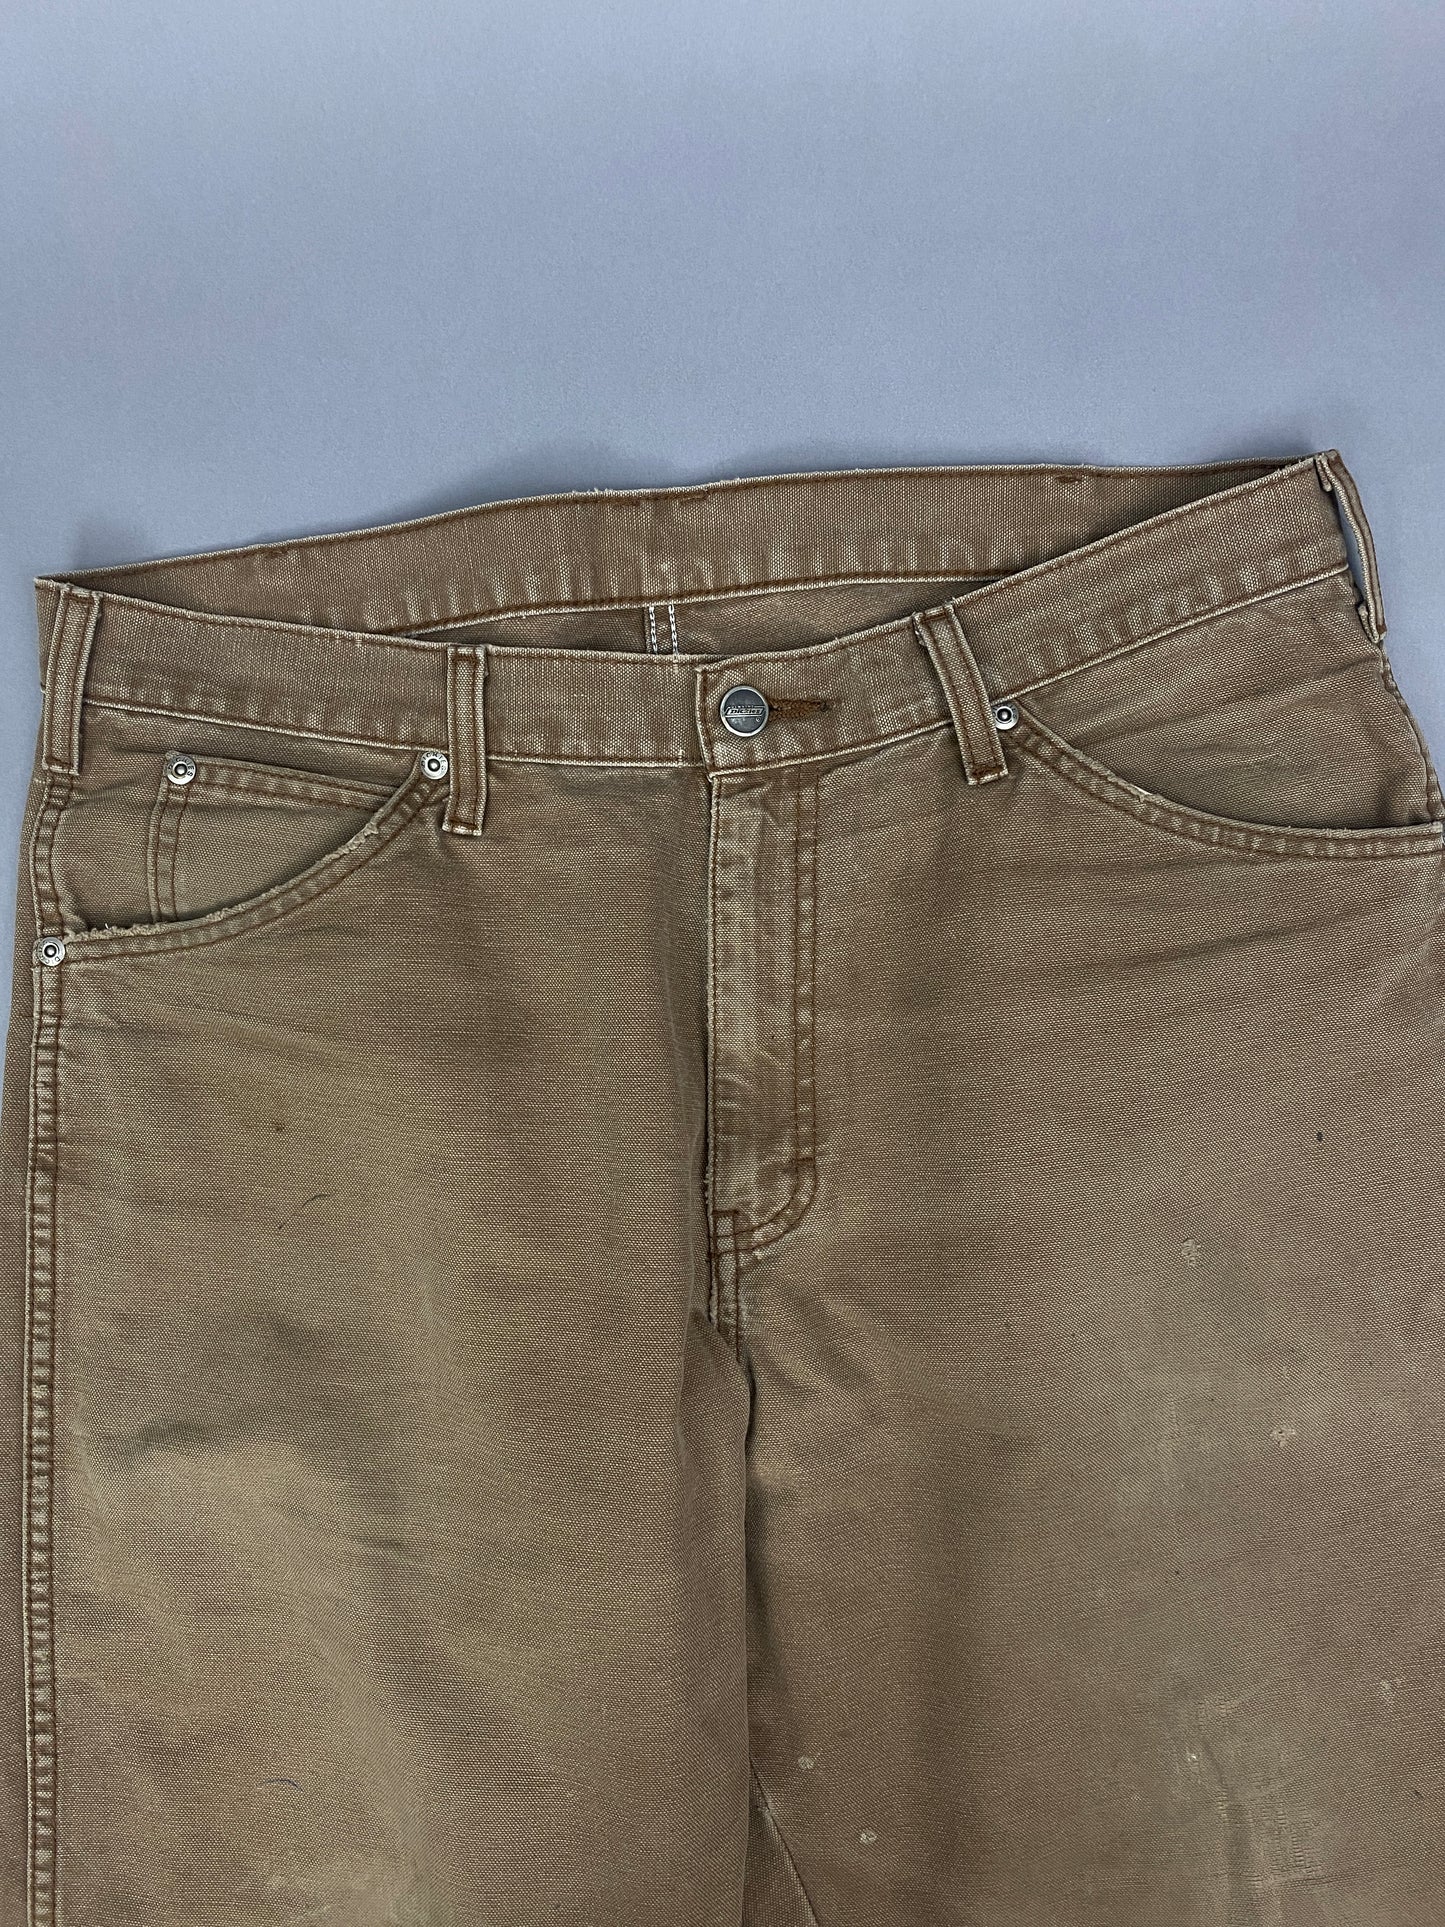 Dickies Vintage Carpenter Jeans - 34x32